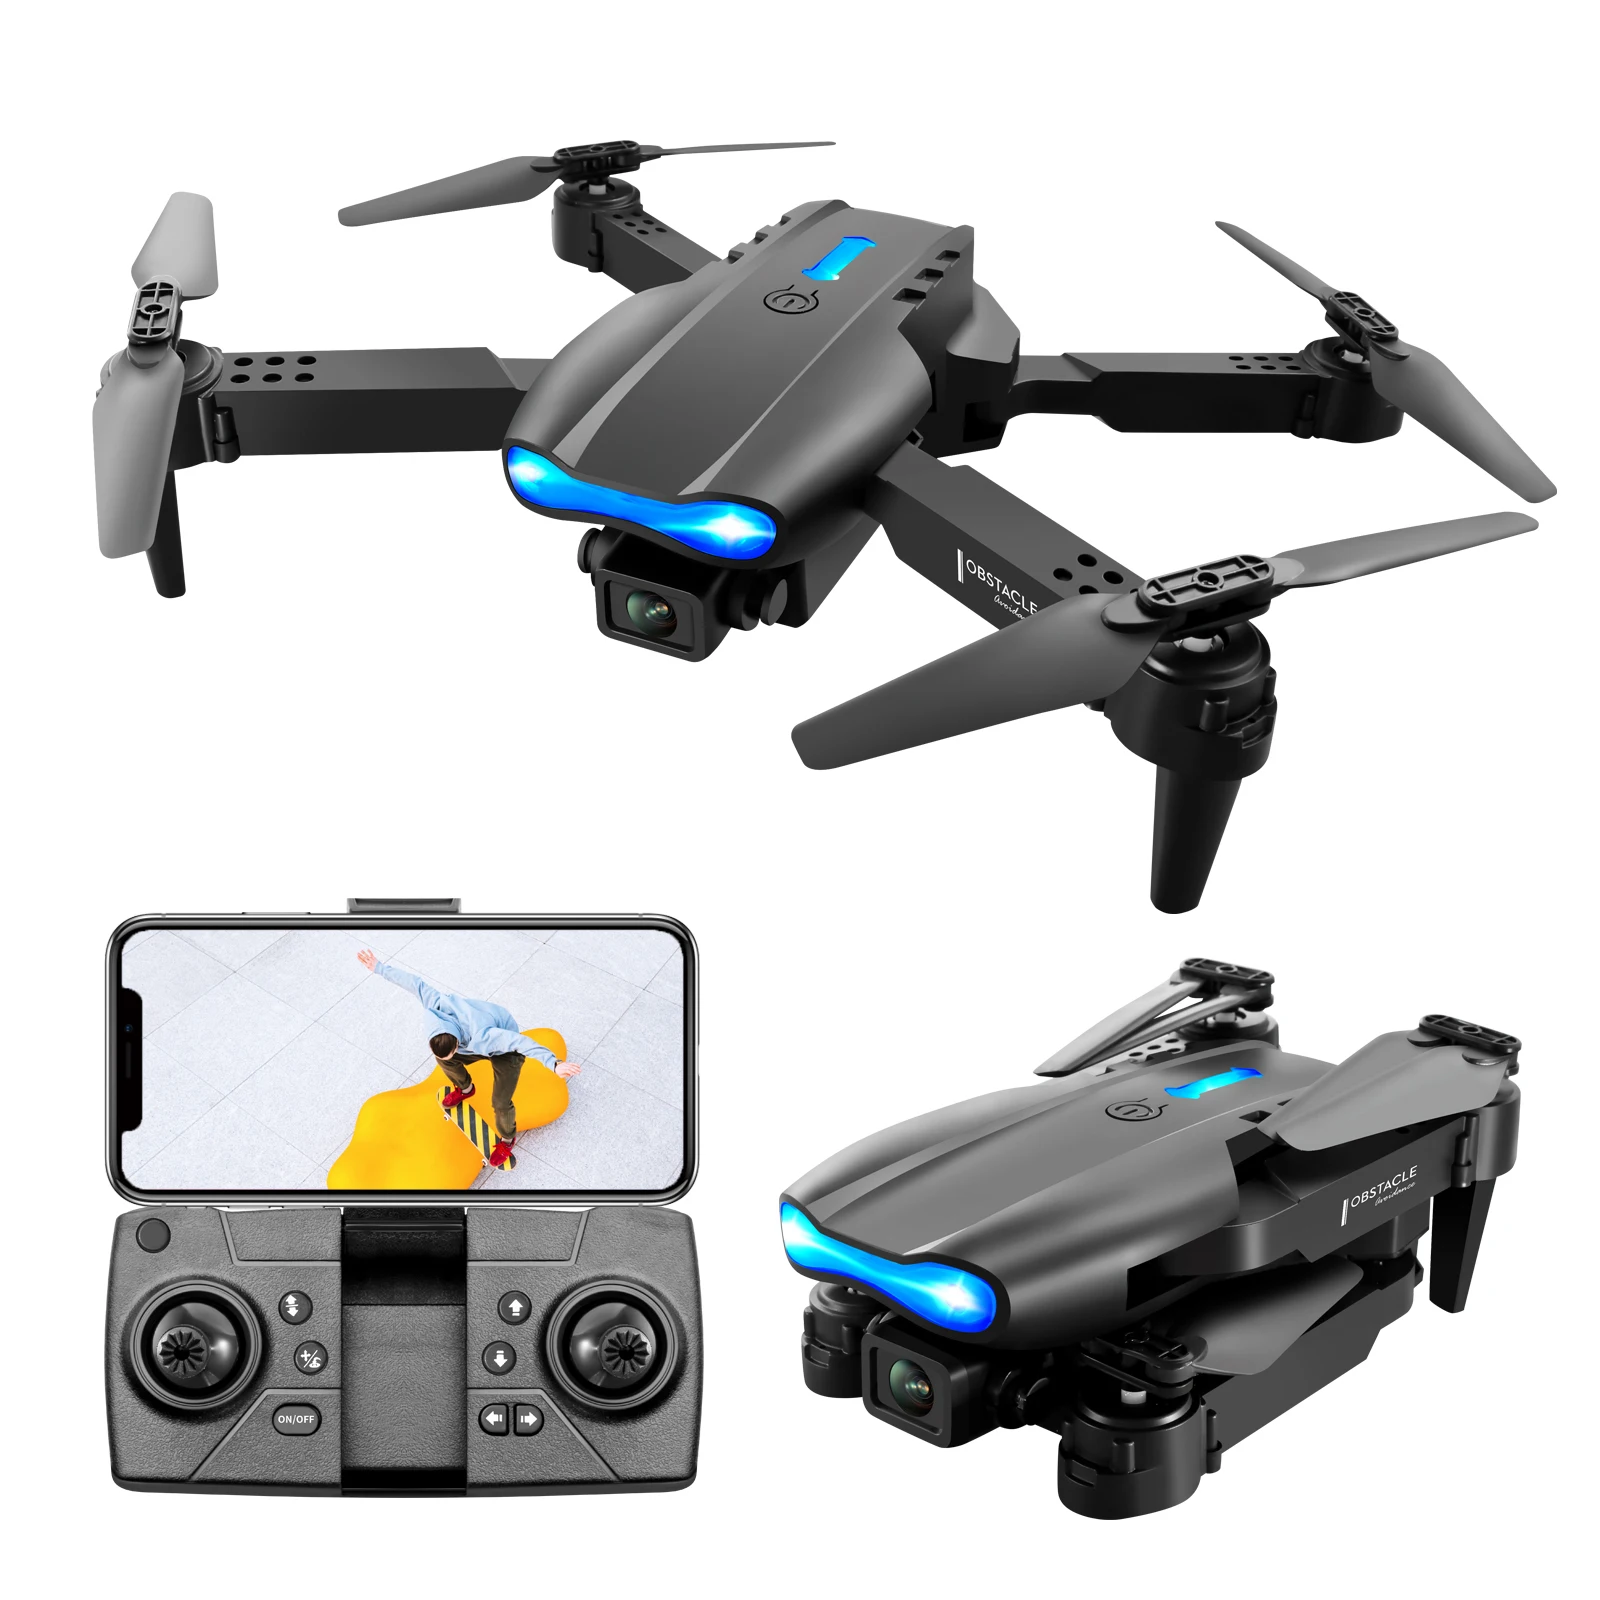 

New E99 drone pro 2 infrared obstacle avoidance sensor module 4K HD camera dron E88 RC Quadcopter With Wifi FPV Camera E99 drone, Black